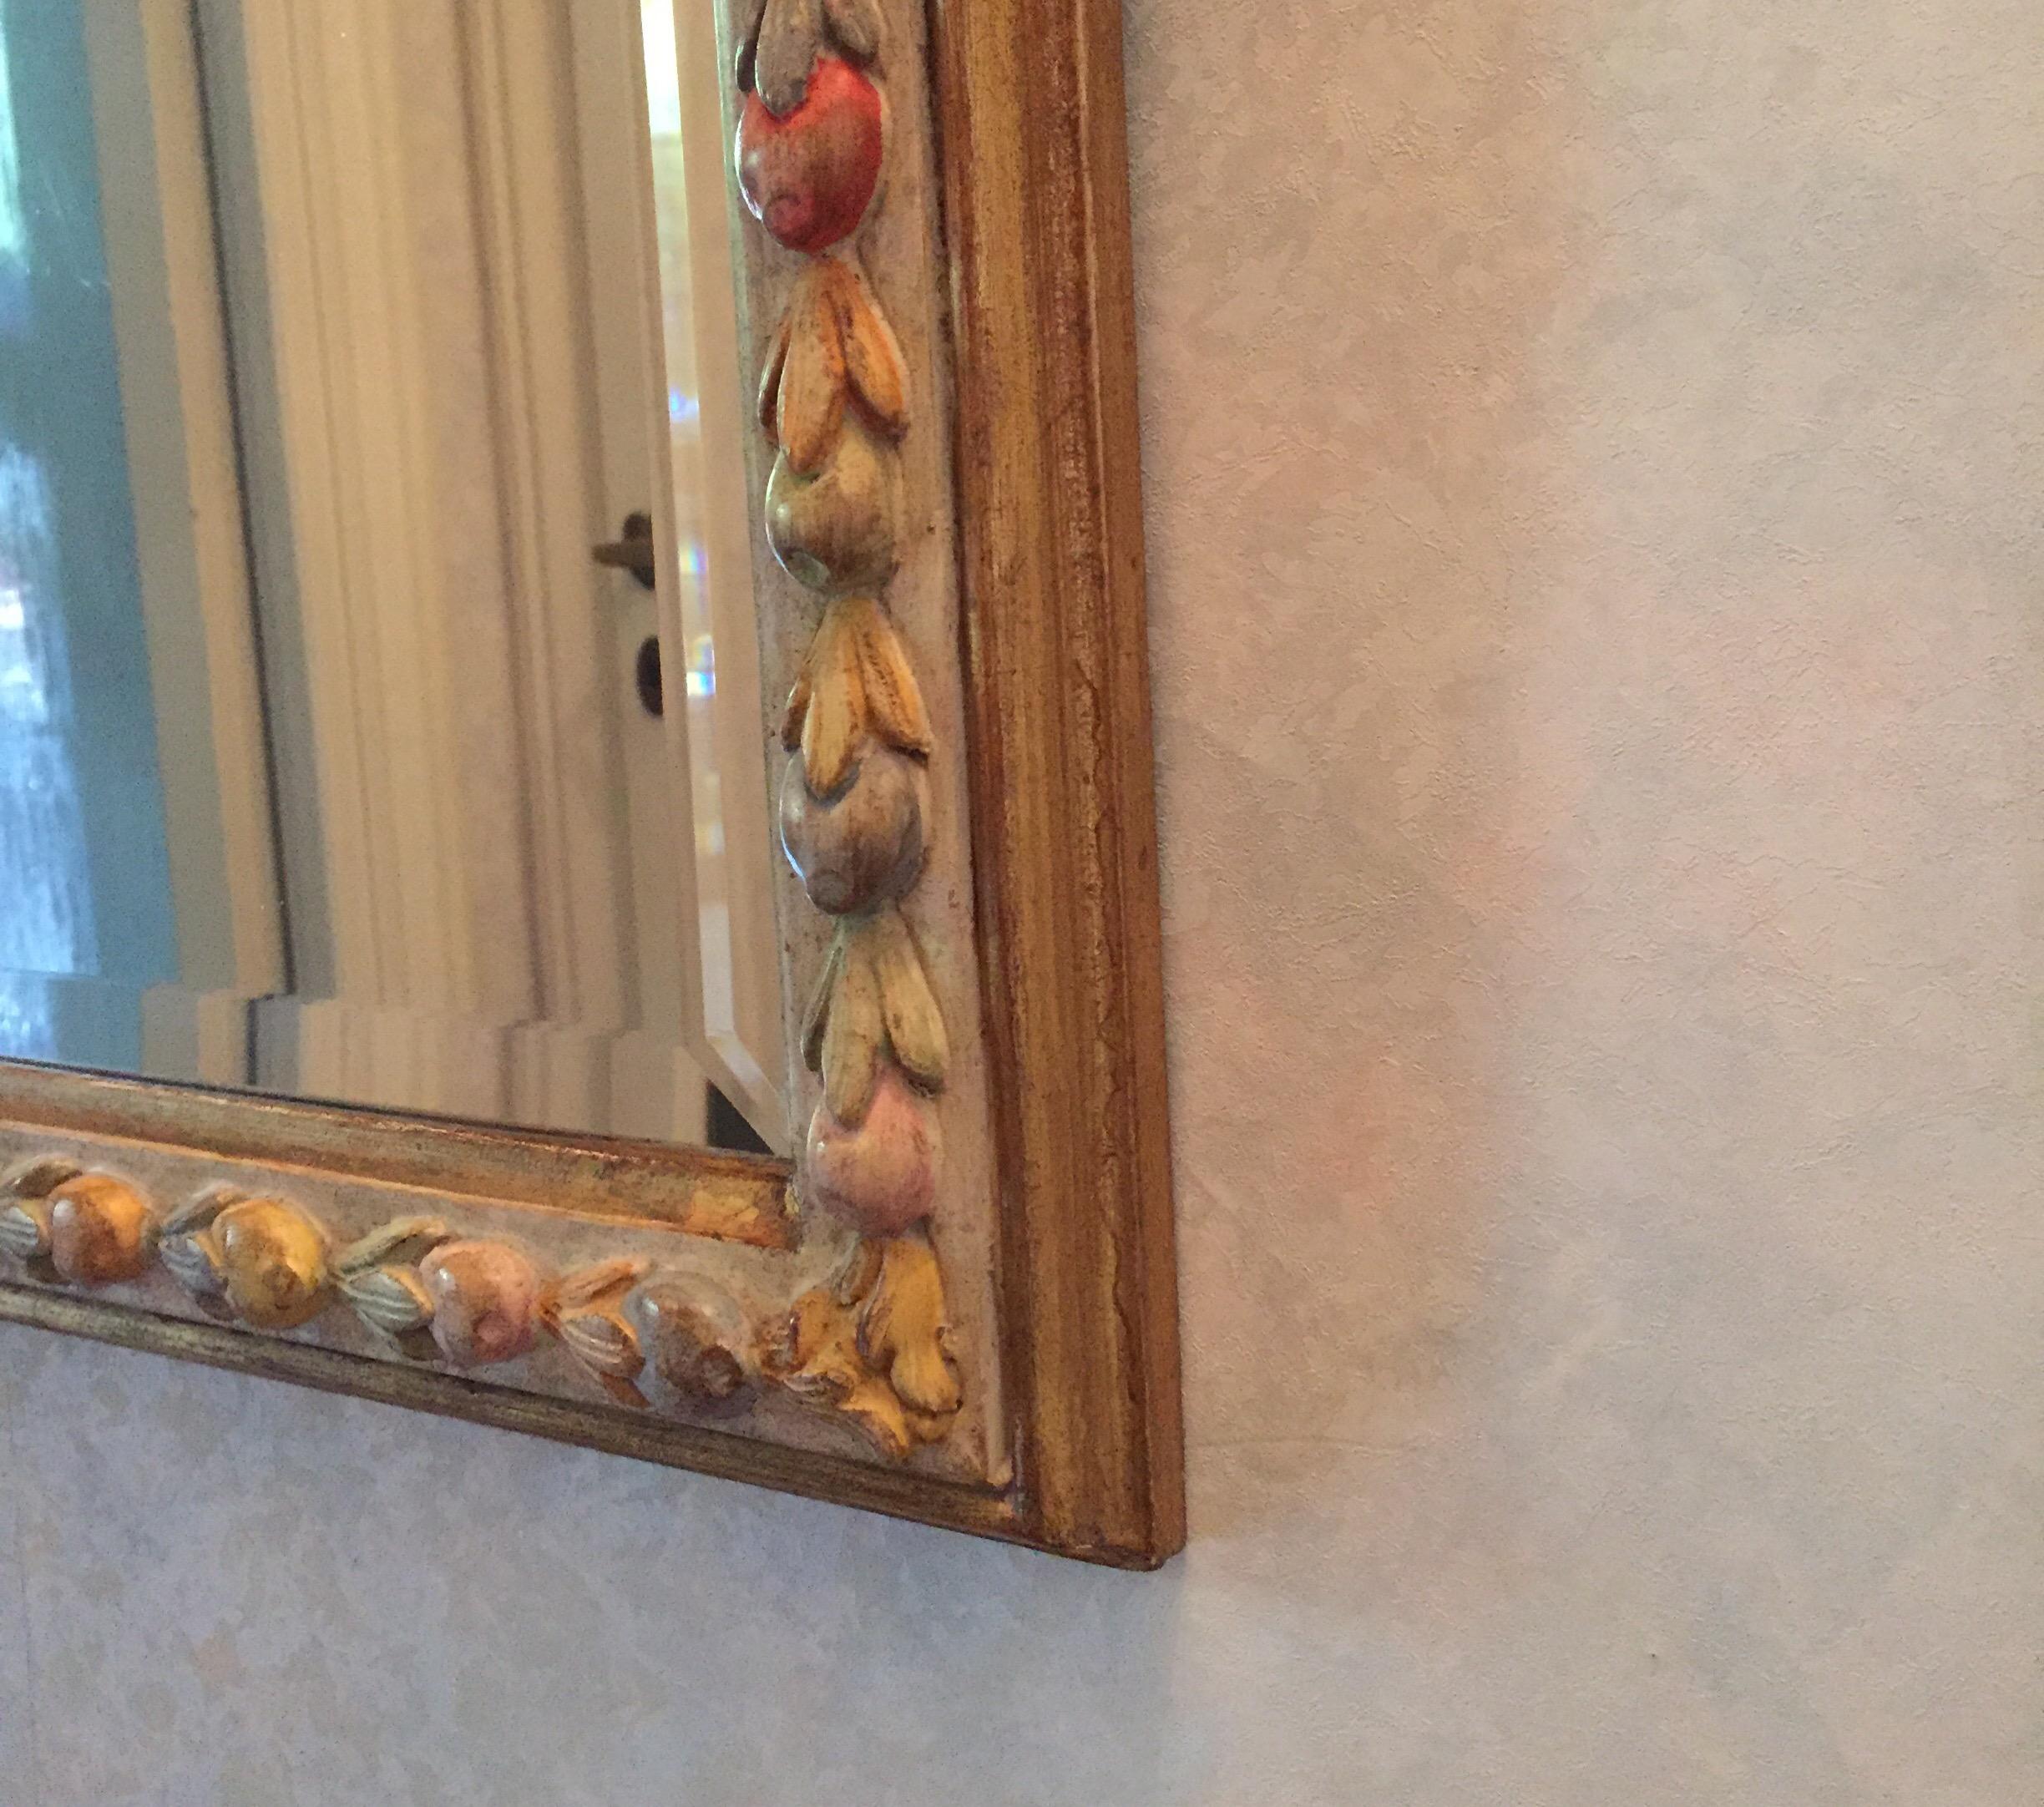 Miroir italien vintage de Chelini à Florence, décoré de sculptures de fruits peintes avec une décoration polychrome de couleur douce.
Fabrication italienne datant d'environ 1980.
En bon état, usure conforme à l'âge et à l'usage.

Il s'adapte